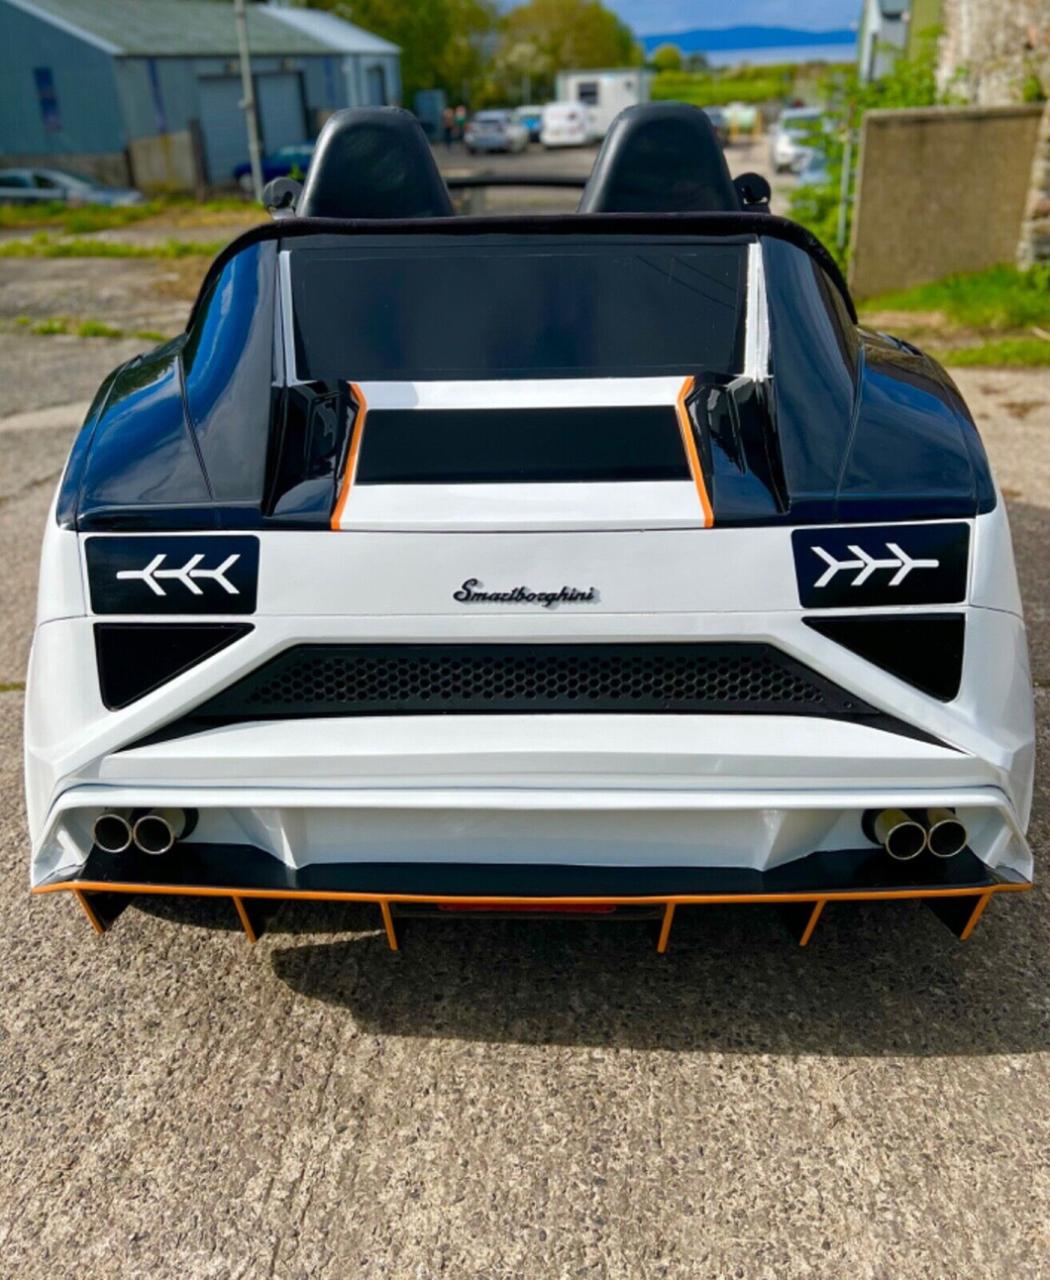 Smart Fortwo độ kiểu Lamborghini thành siêu xe cực ngắn - Ảnh 3.